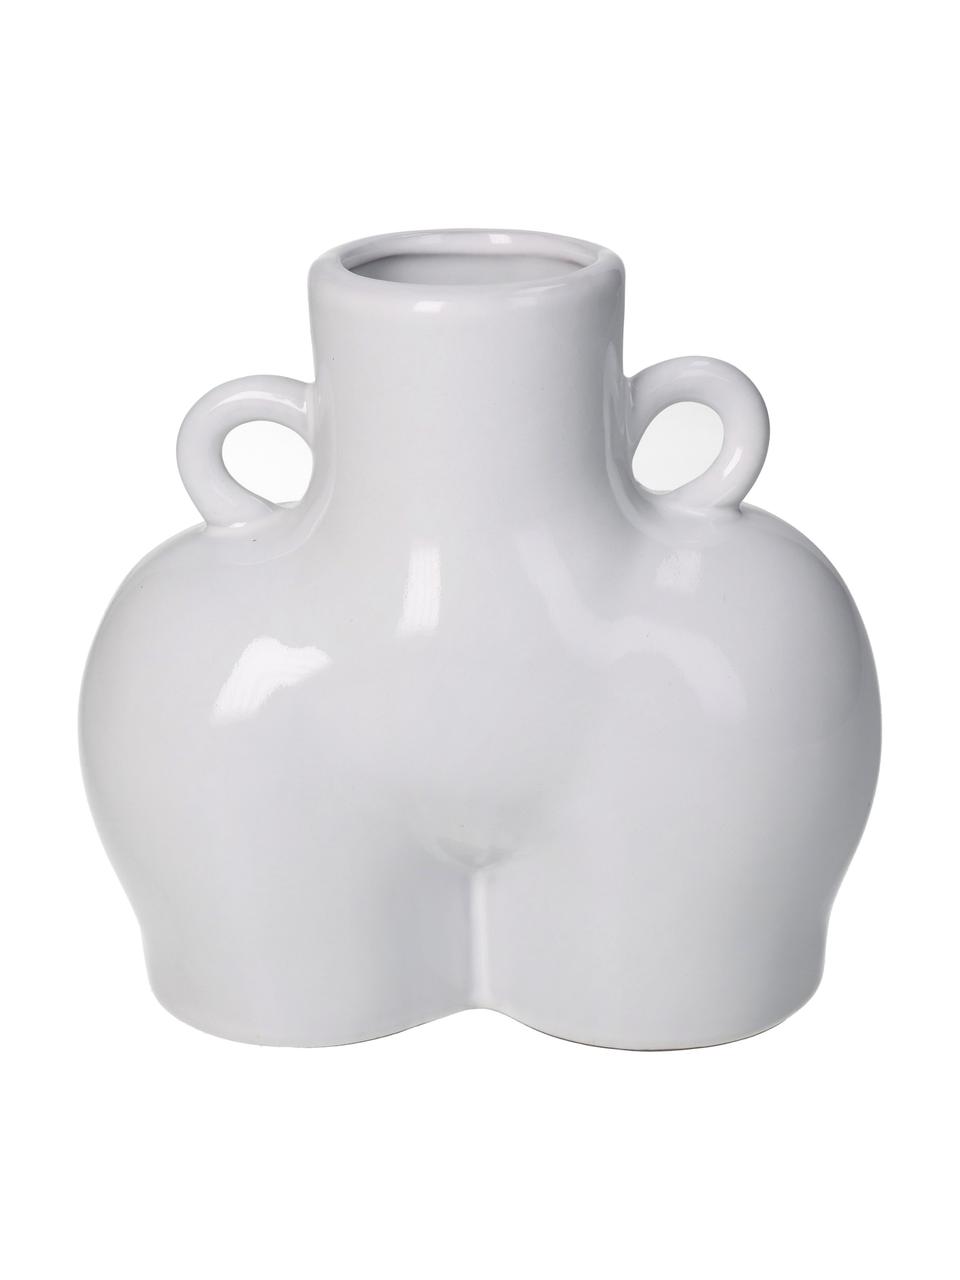 Design-Vase Body aus Steingut, Steingut, Weiss, B 14 x H 14 cm